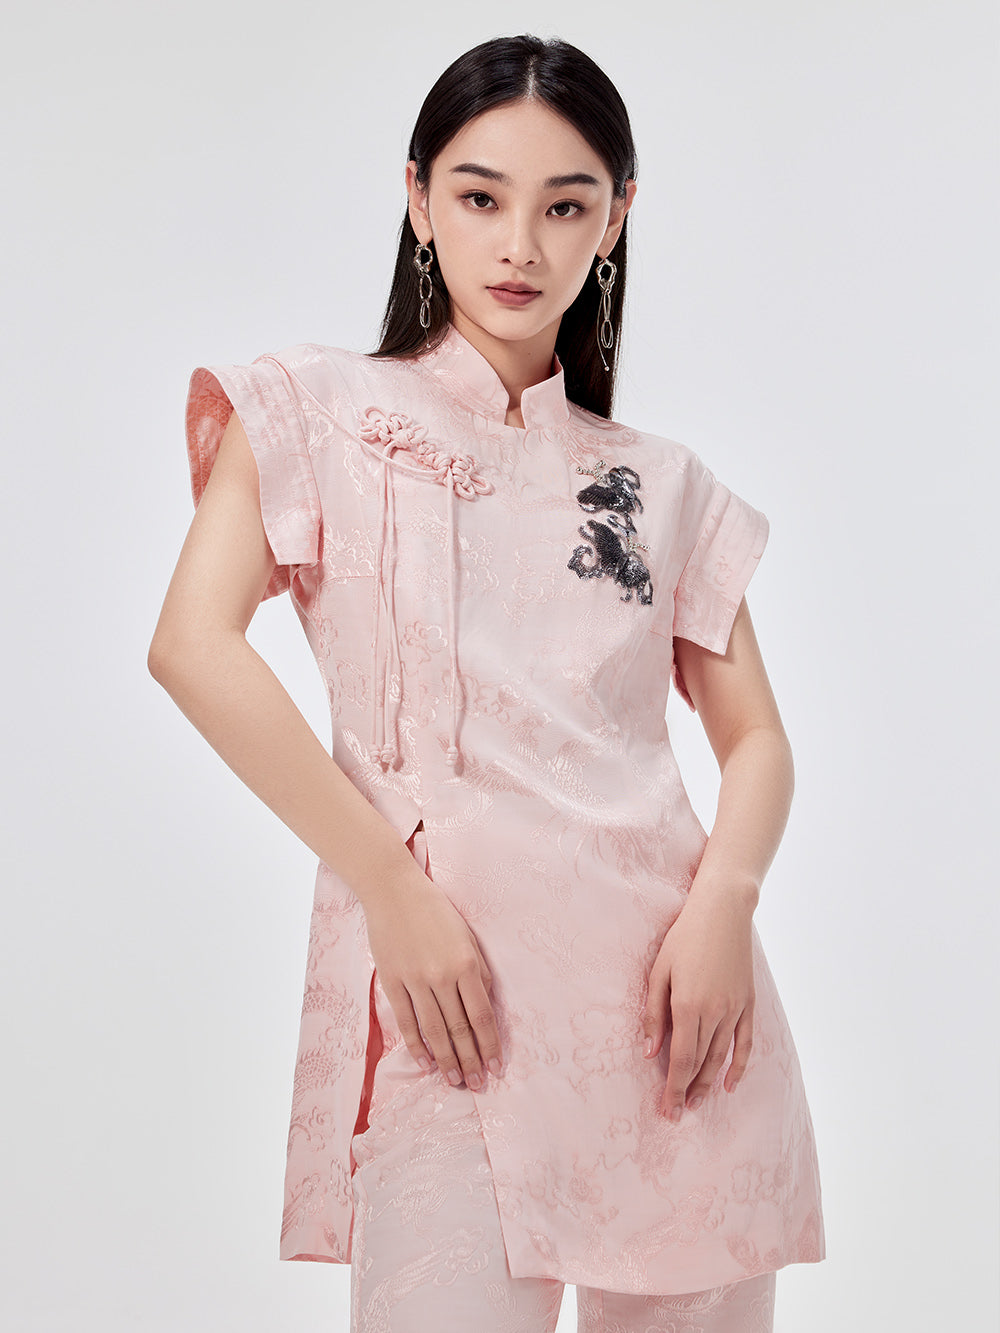 MUKZIN Chinese Cheongsam Design Sleeveless T-shirt